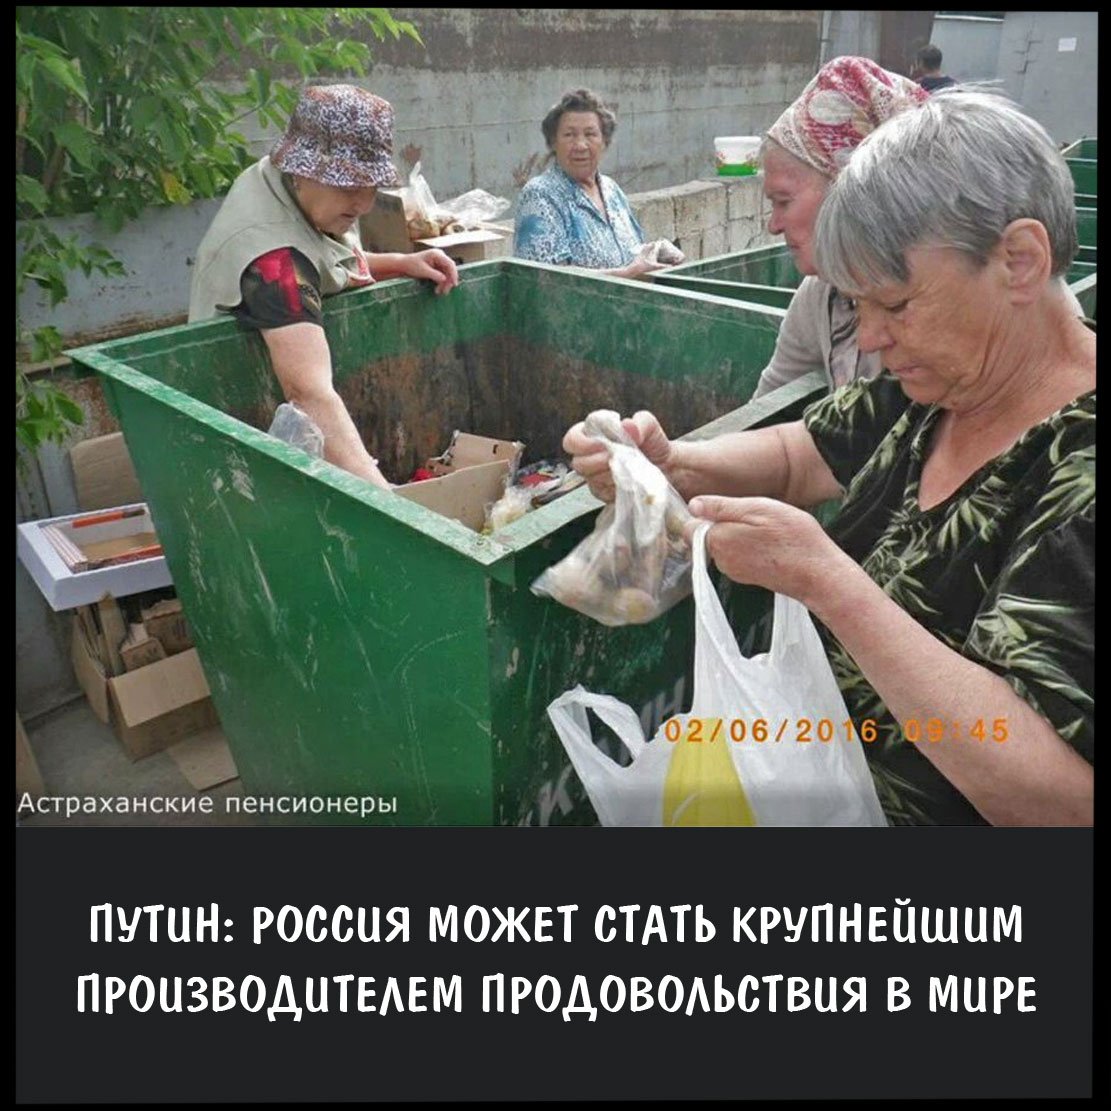 Копаются в мусорках. Русские пенсионеры на помойках. Пенсионеры на помойке в России. Пенсионеры роются в помойке.